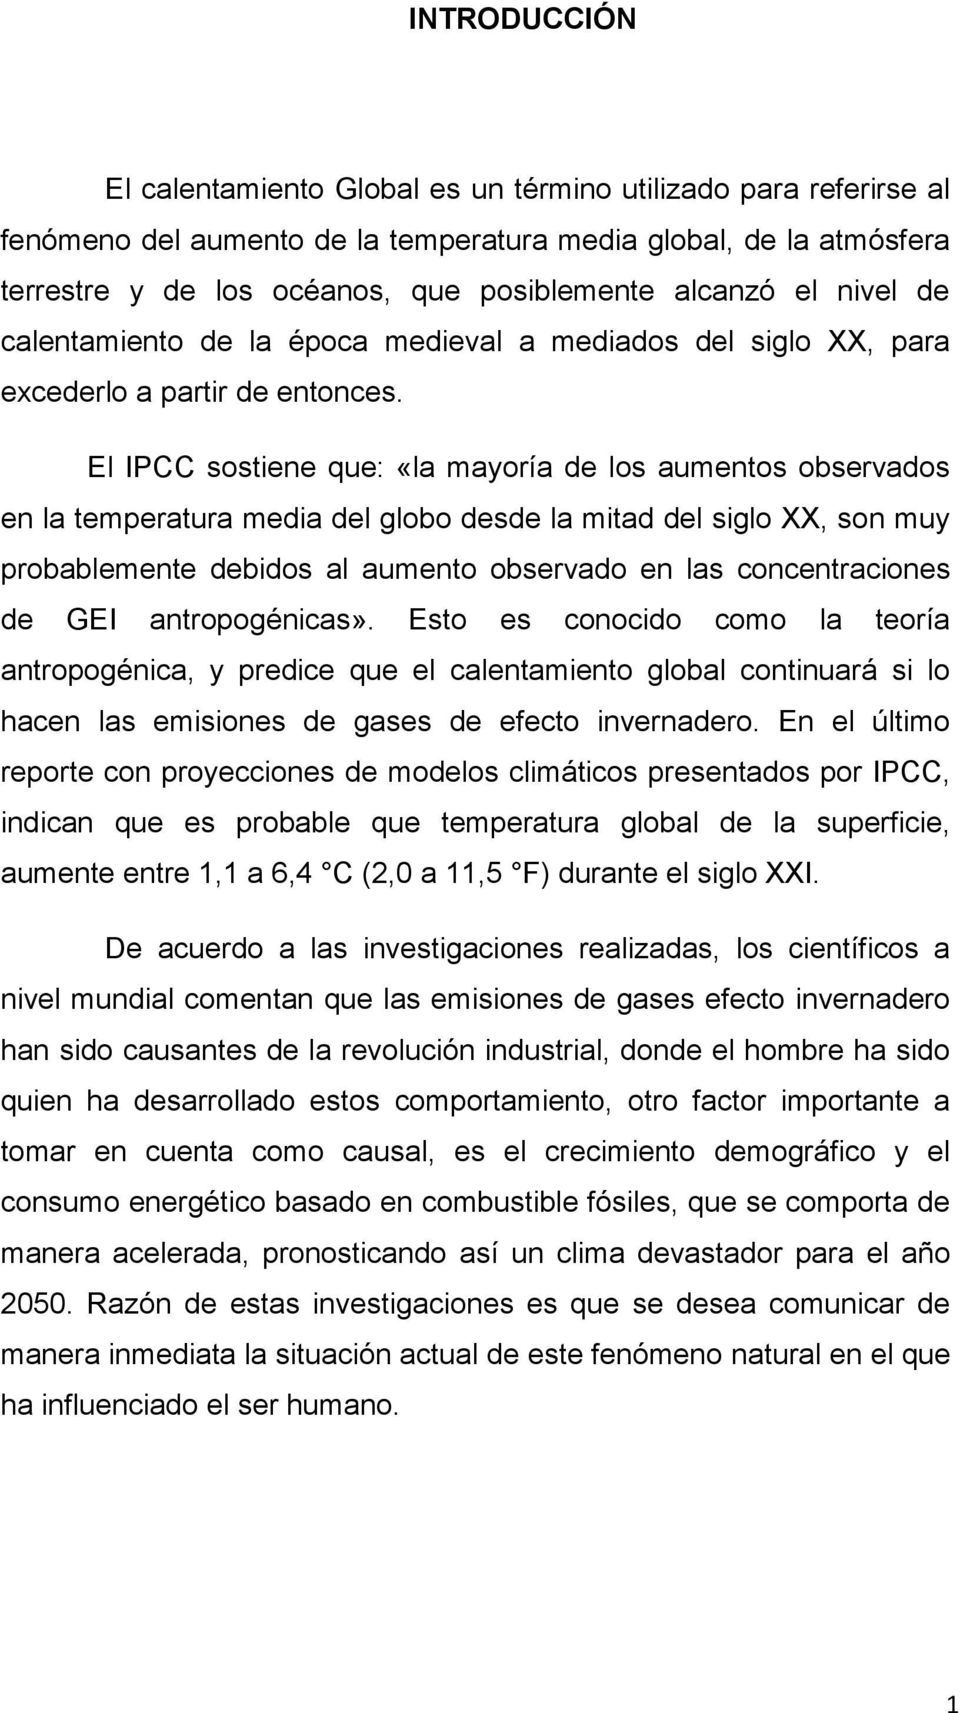 El IPCC sostiene que: «la mayoría de los aumentos observados en la temperatura media del globo desde la mitad del siglo XX, son muy probablemente debidos al aumento observado en las concentraciones